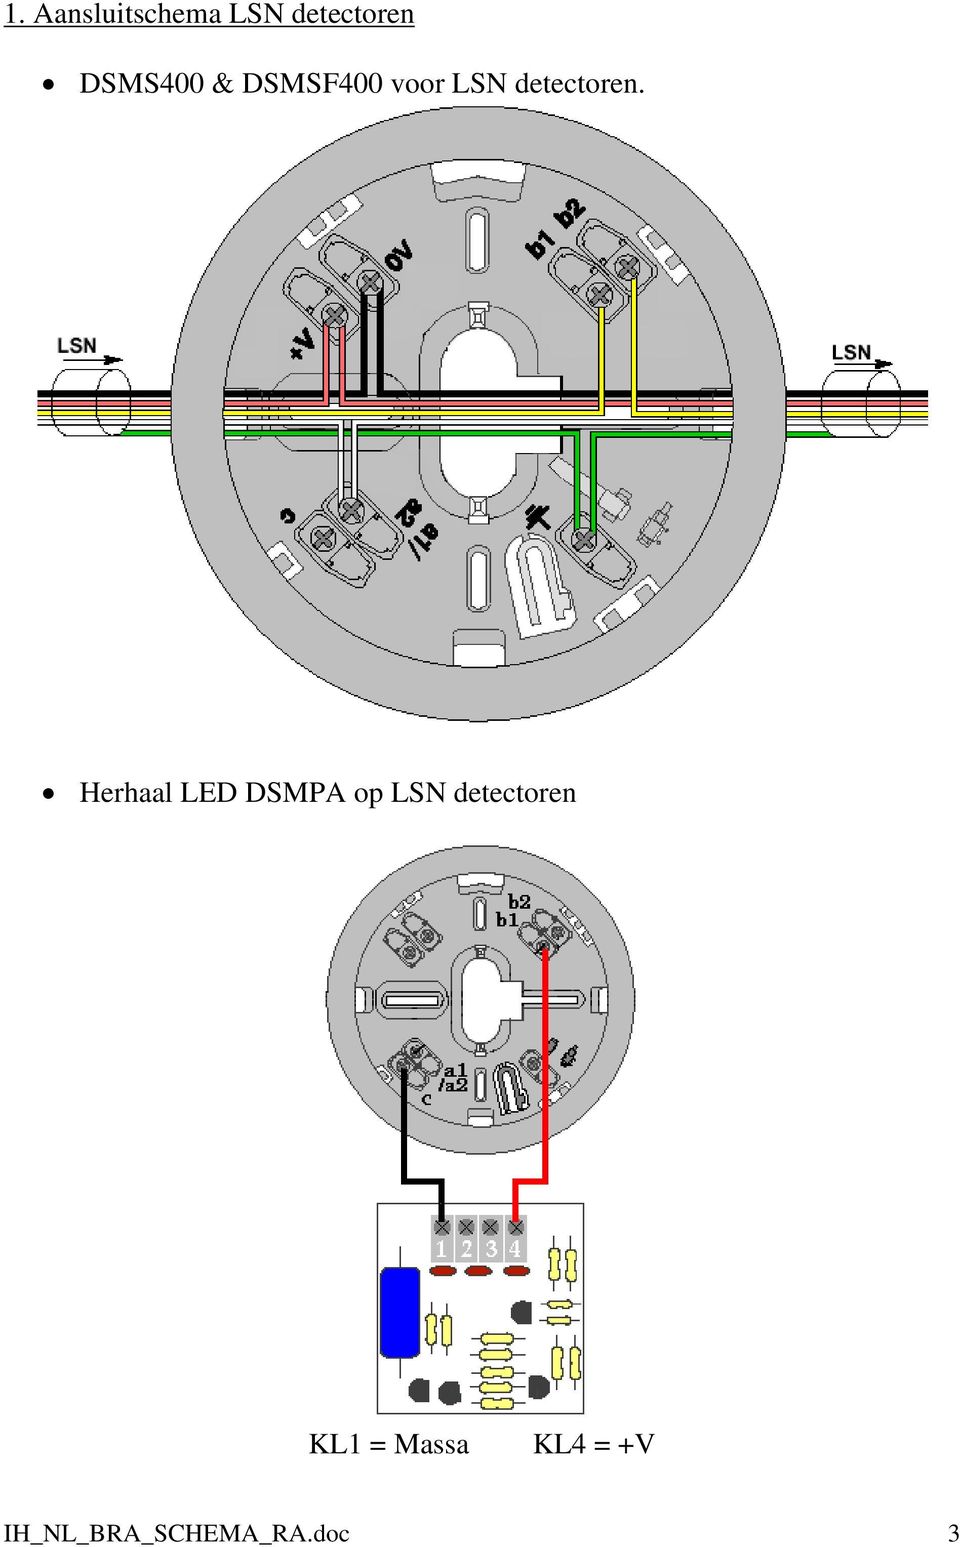 Herhaal LED DSMPA op LSN detectoren